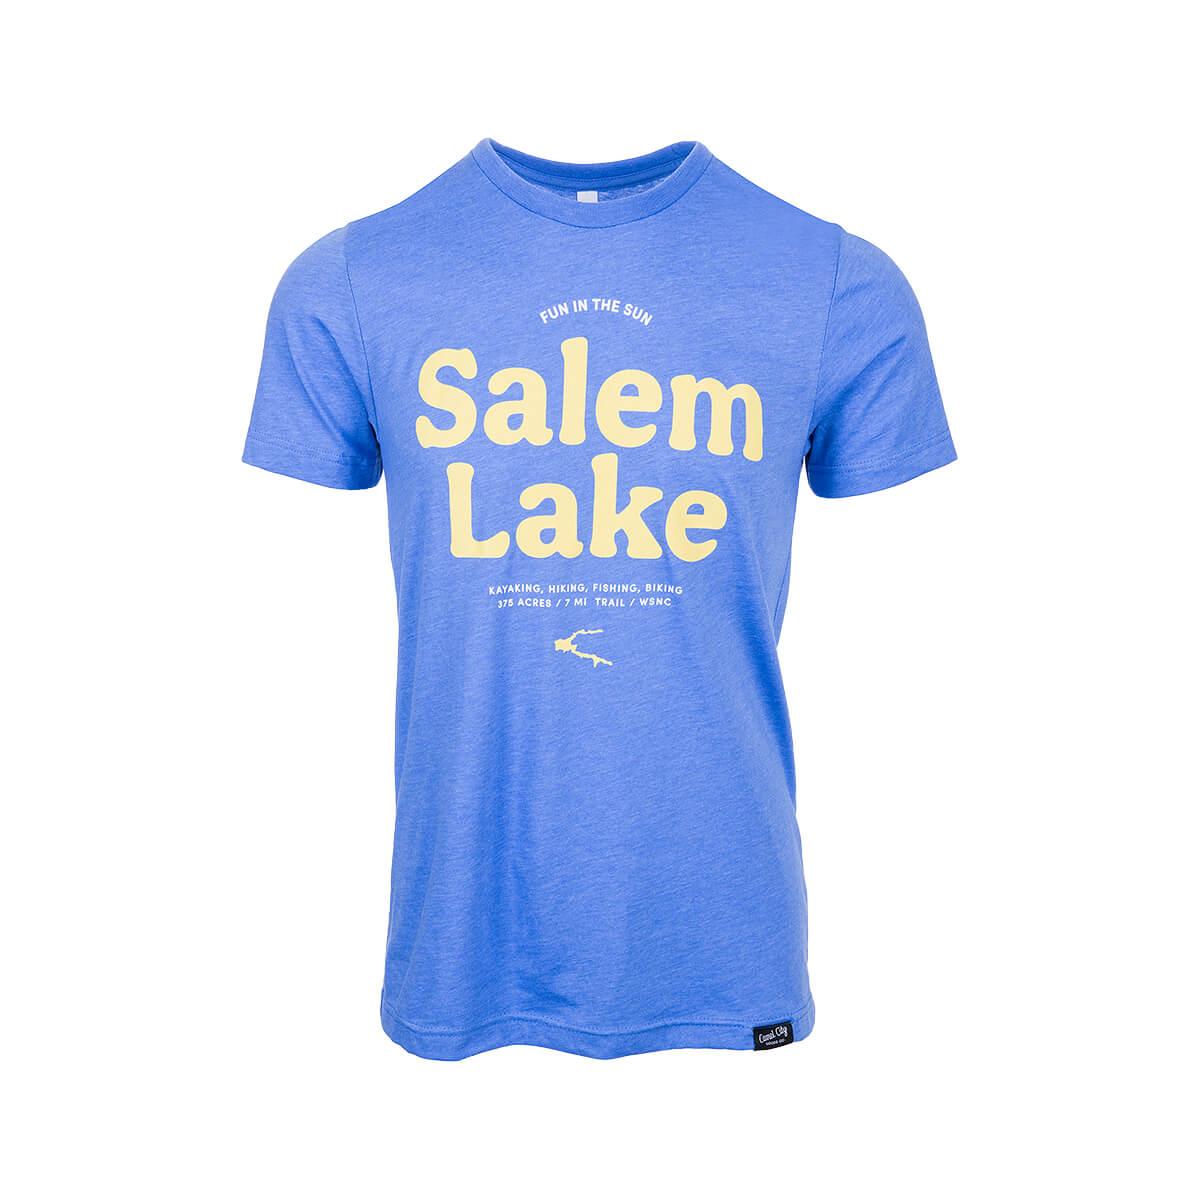  Salem Lake Short Sleeve T- Shirt